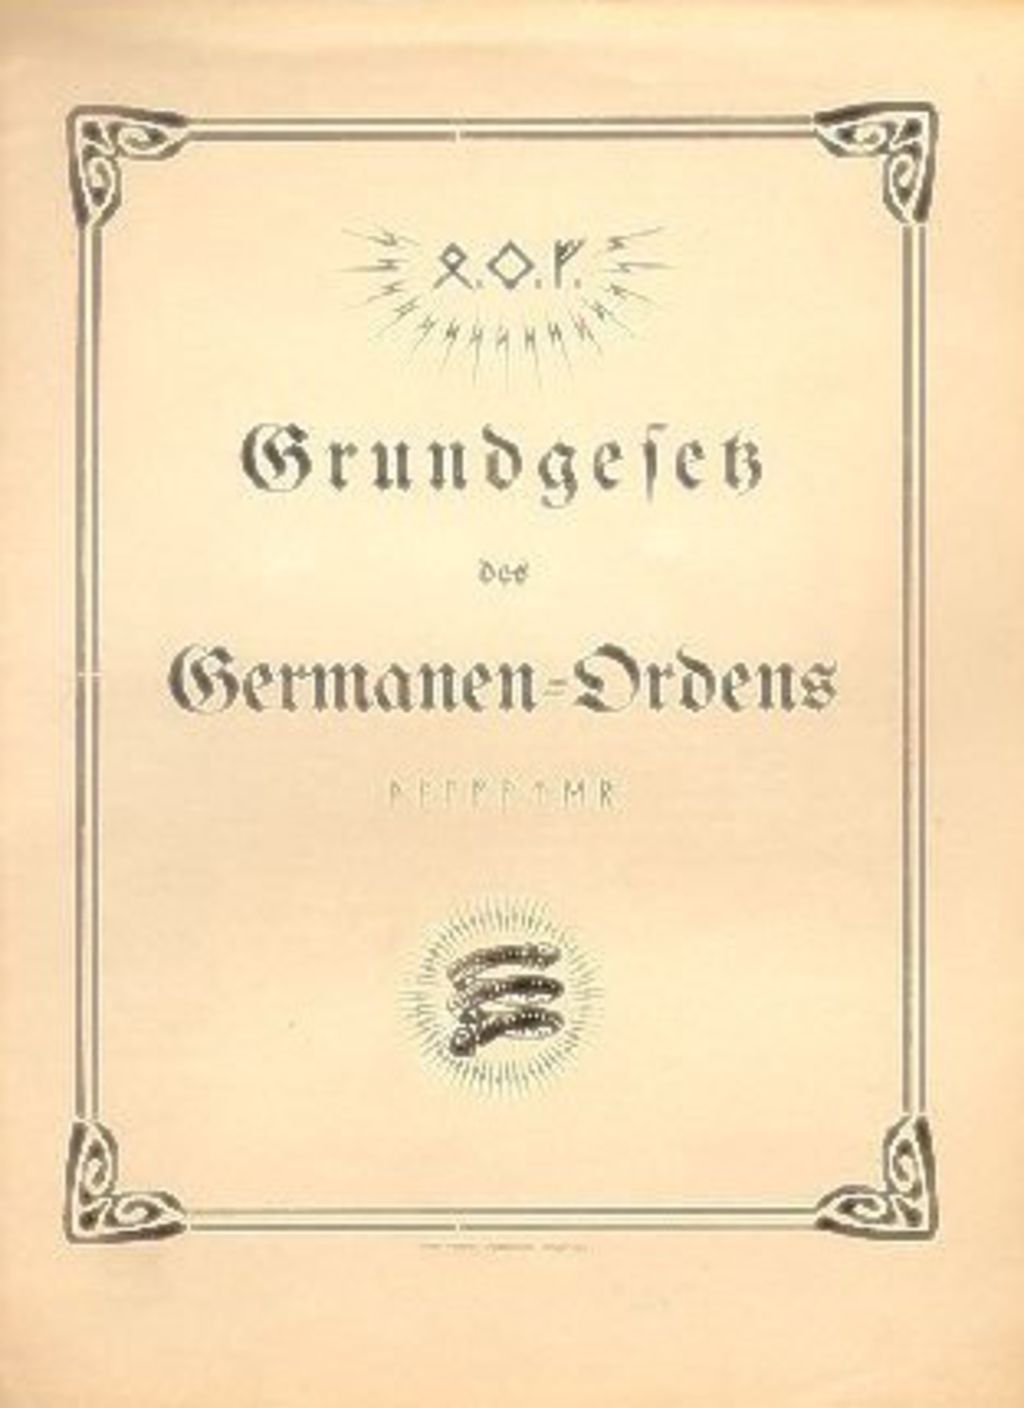 Exponat: Broschüre: Grundgesetz des Germanen-Ordens, um 1912